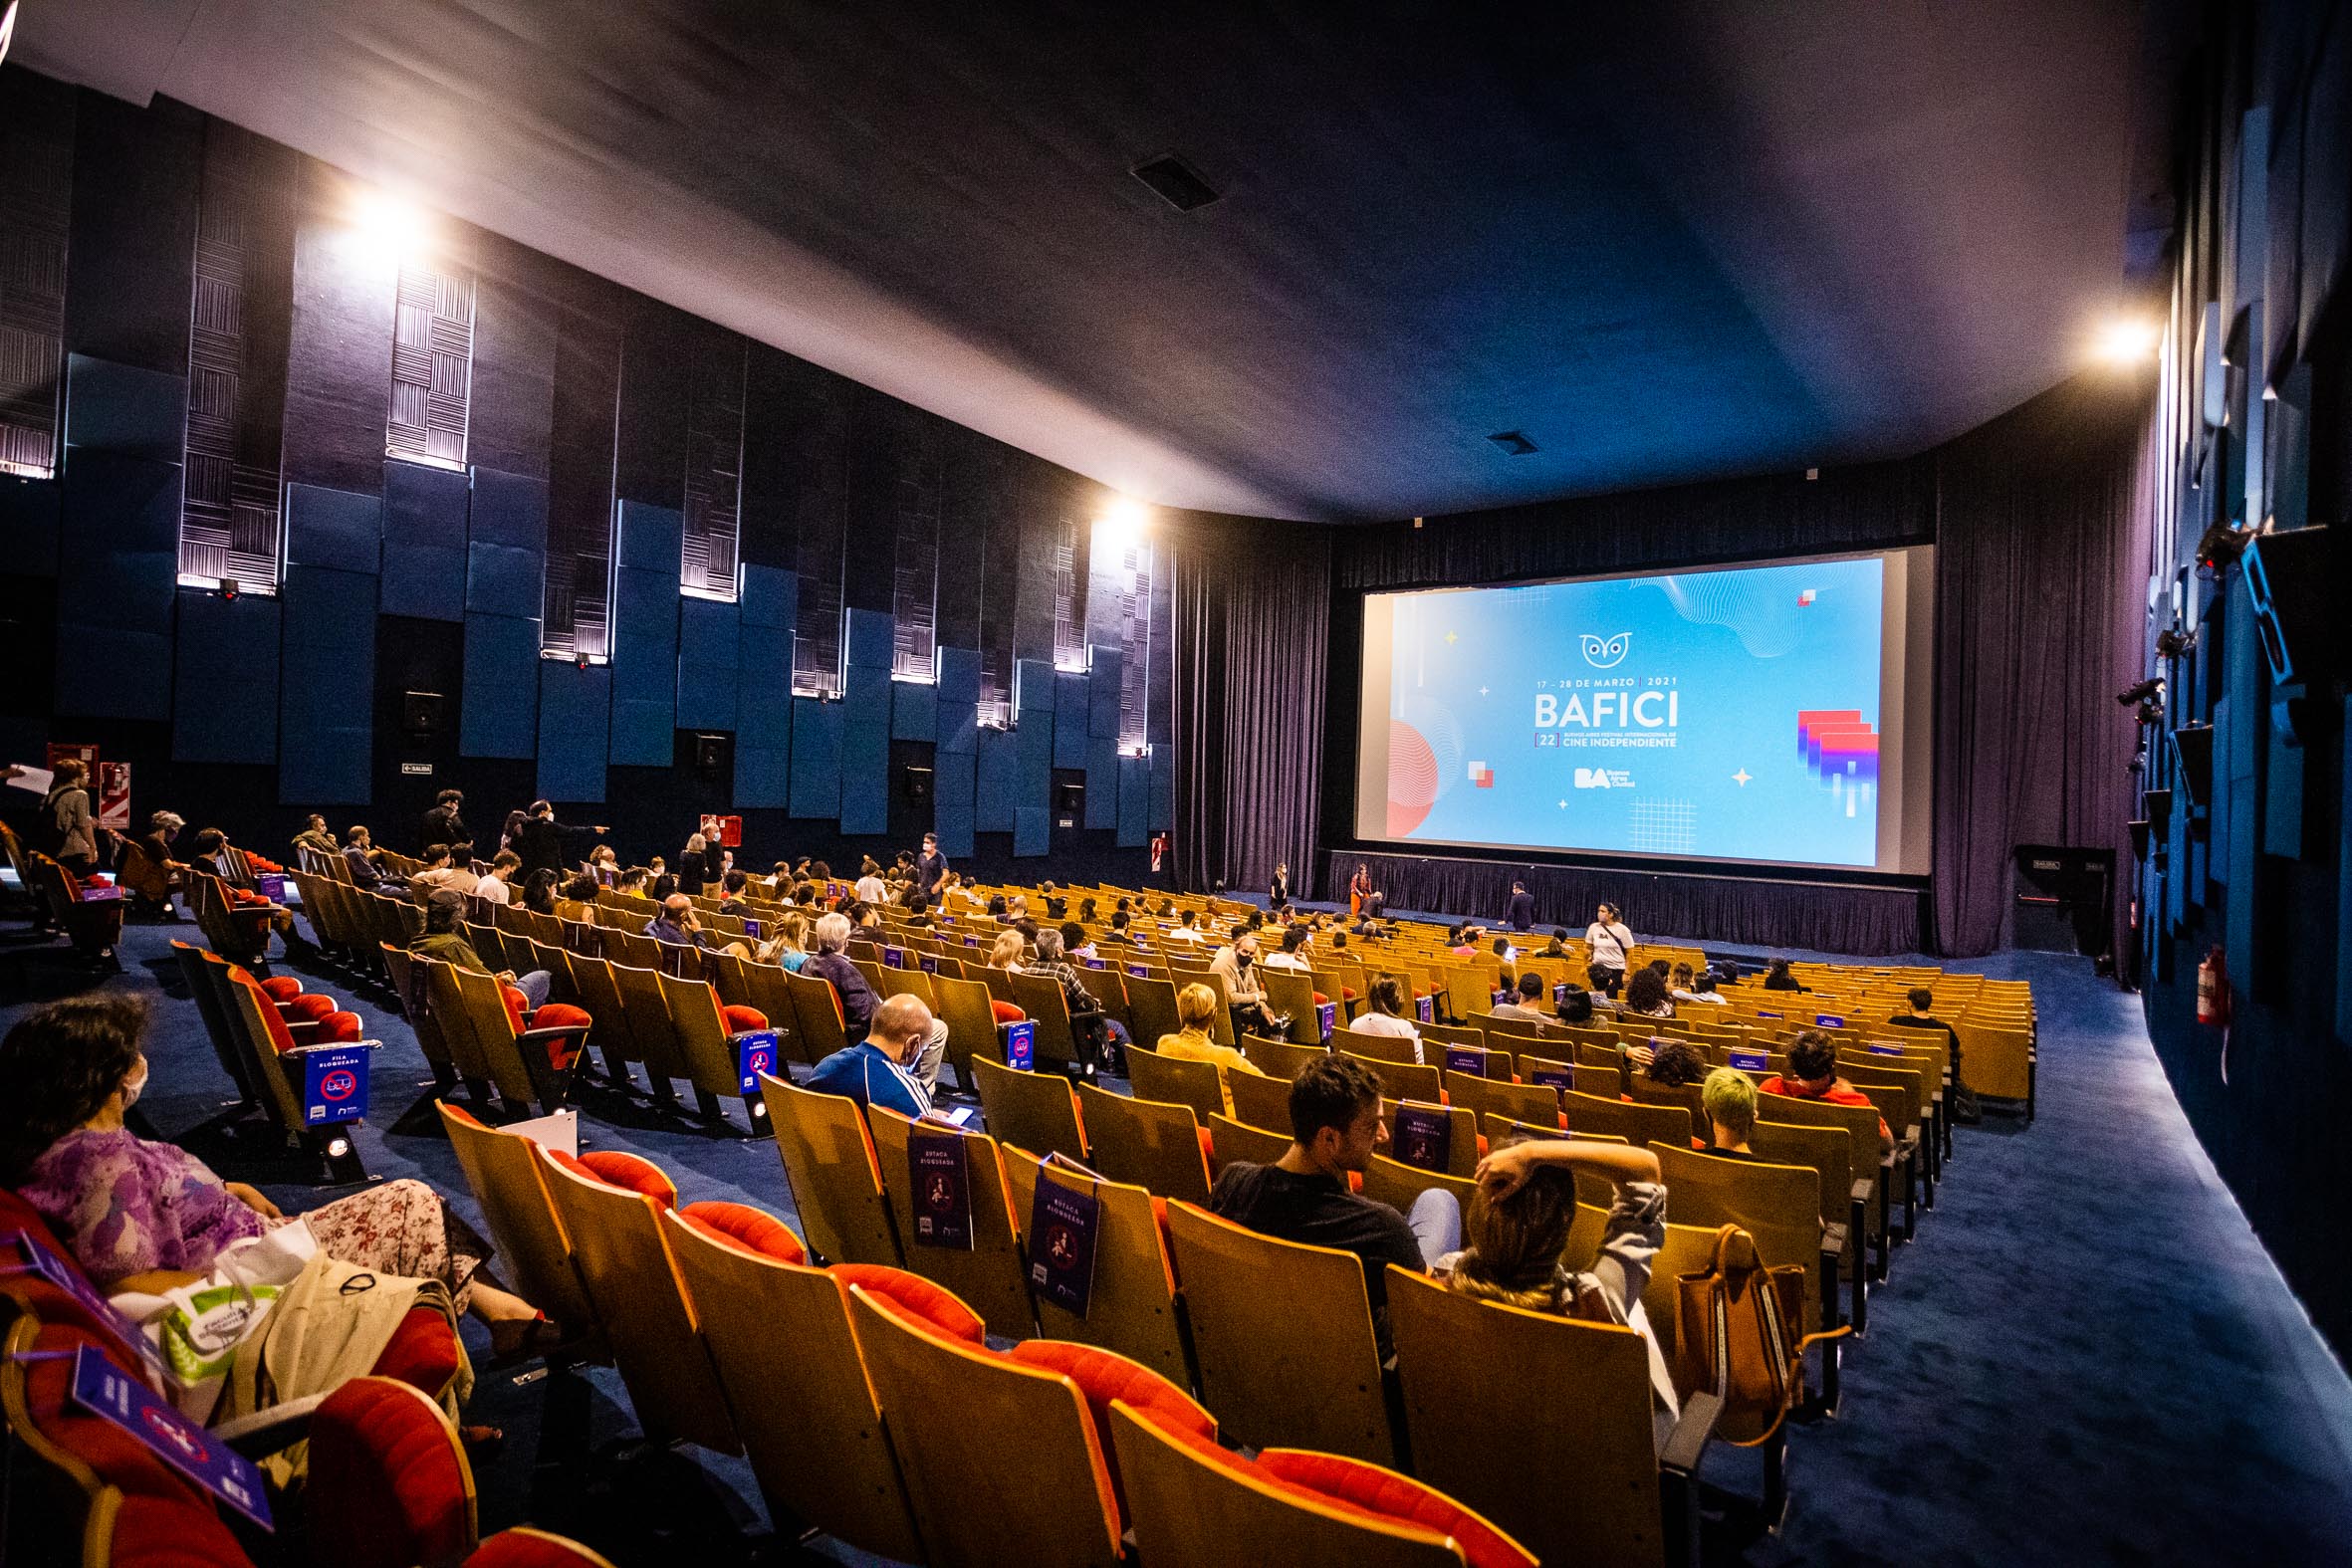 Sala de Cine Gaumont con espectadores